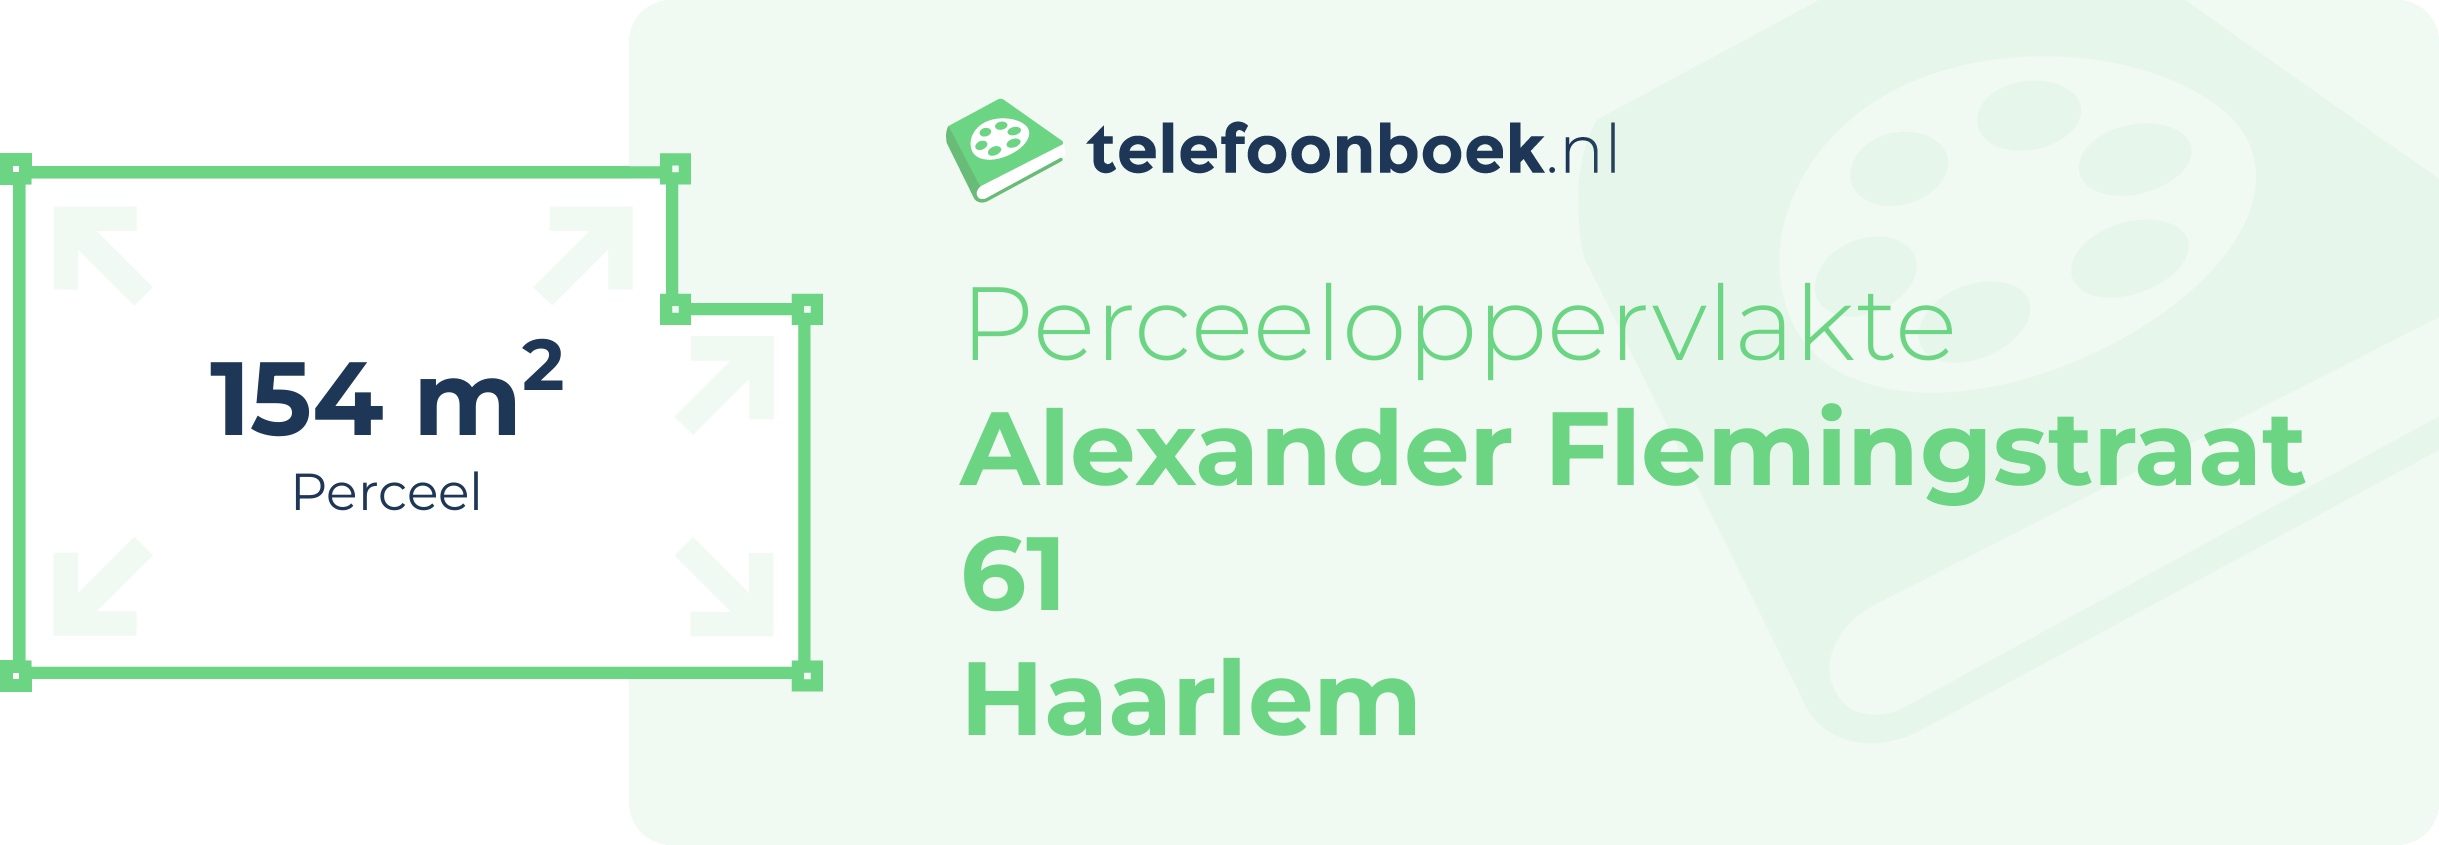 Perceeloppervlakte Alexander Flemingstraat 61 Haarlem